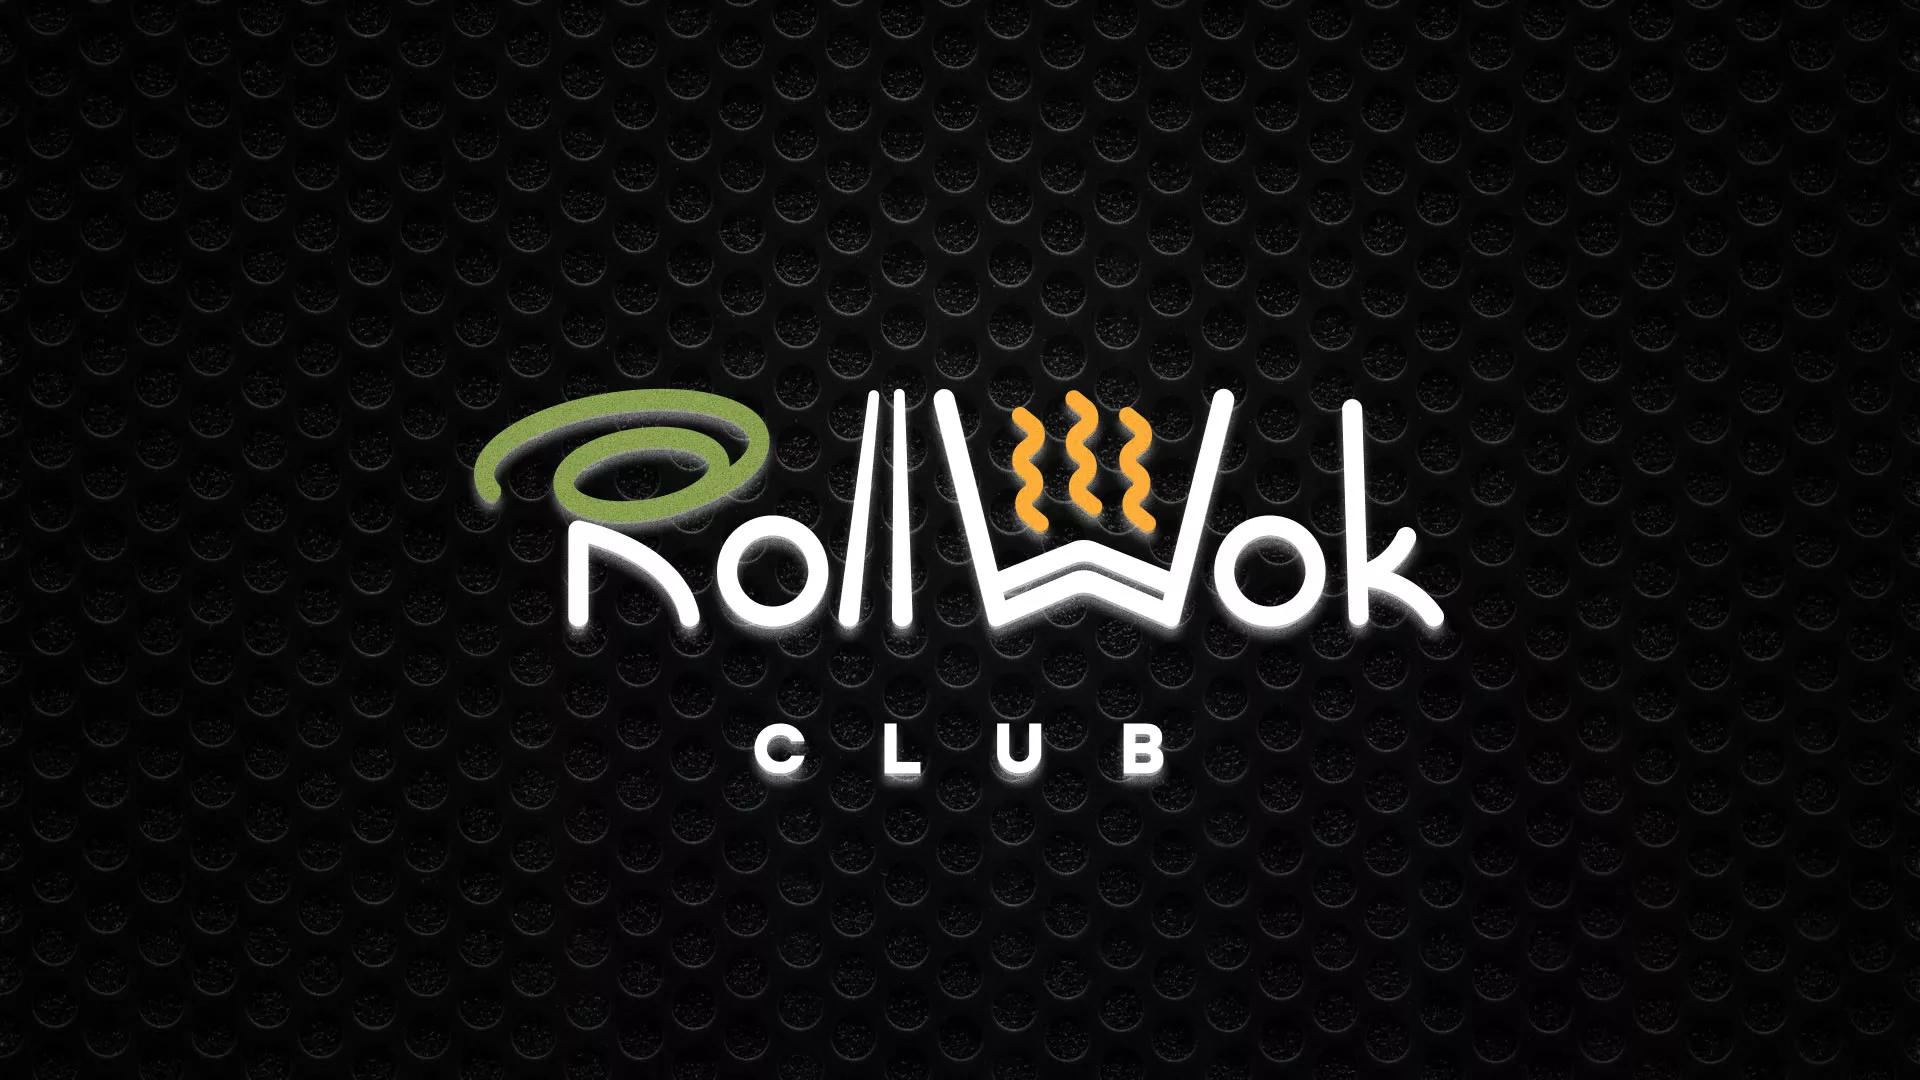 Брендирование торговых точек суши-бара «Roll Wok Club» в Щелково